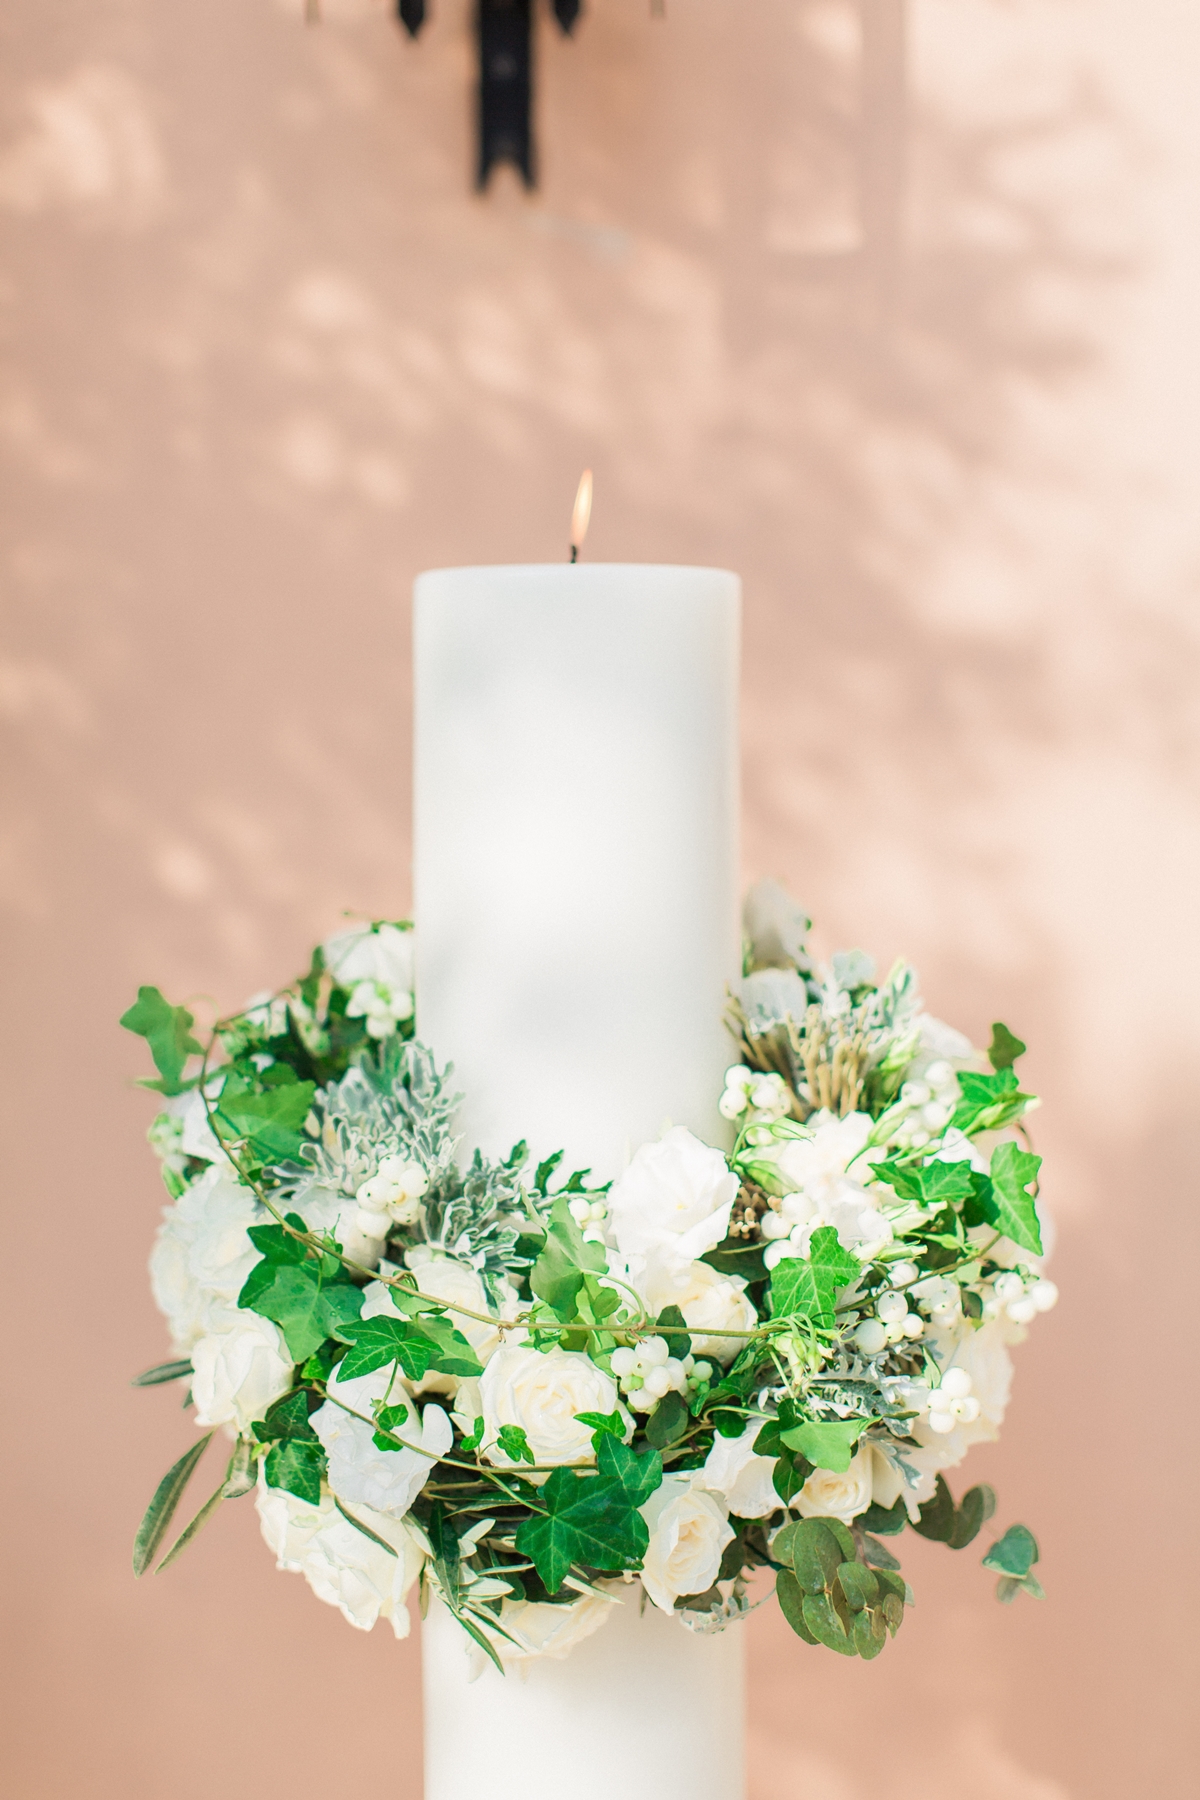 Λαμπάδες γάμου με στεφάνι από λευκά τριαντάφυλλα, κισσό και φύλλα ελιάς